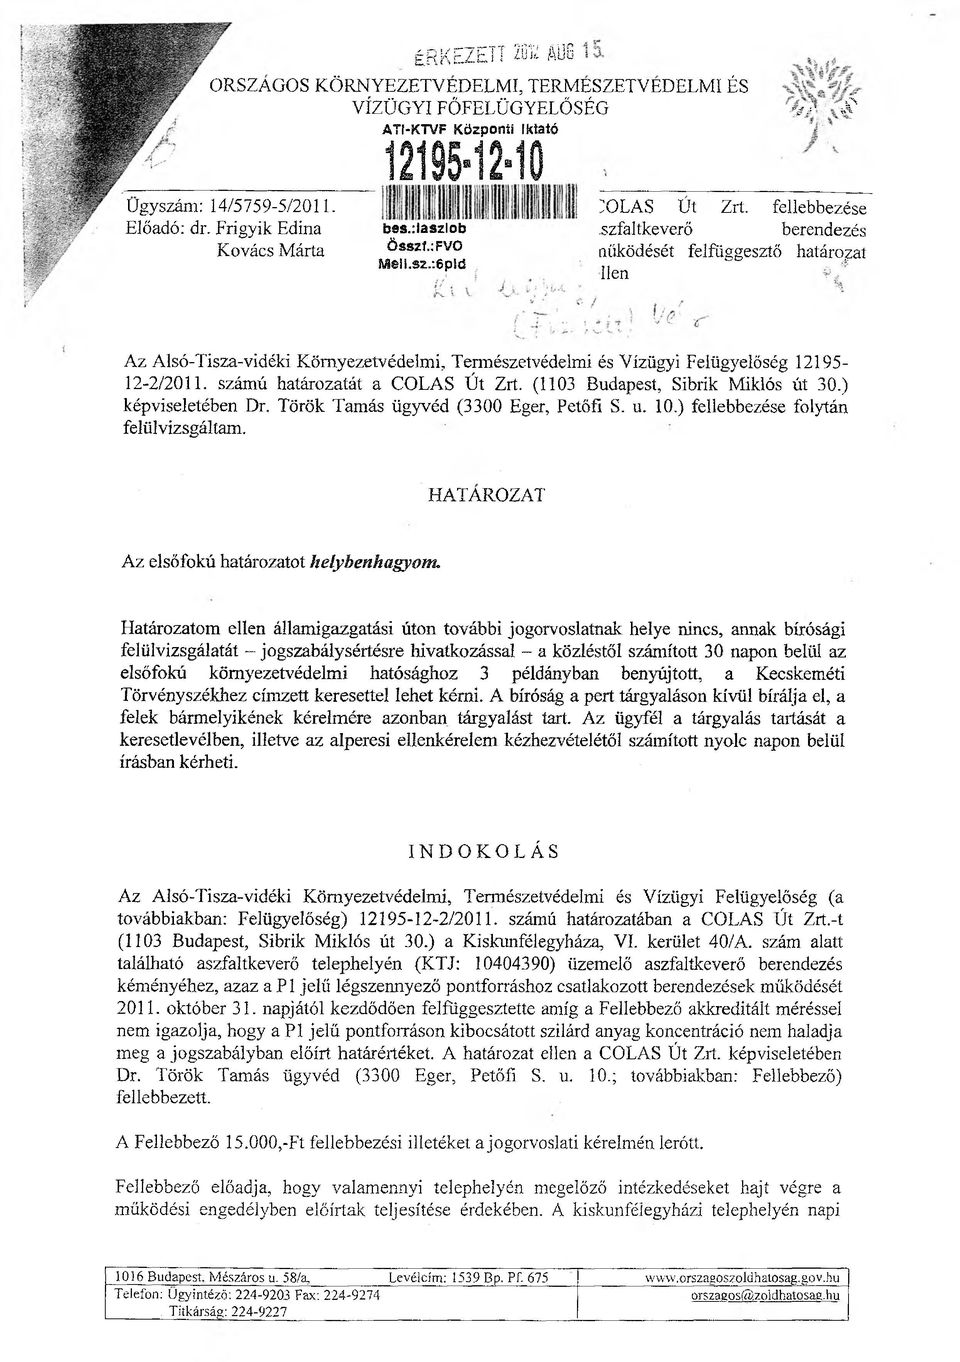 szfaltkeverő berendezés nűködését felfüggesztő határodat lien Az Alsó-Tisza-vidéki Környezetvédelmi, Természetvédelmi és Vízügyi Felügyelőség 12195-12-2/2011. számú határozatát a COLAS Út Zrt.